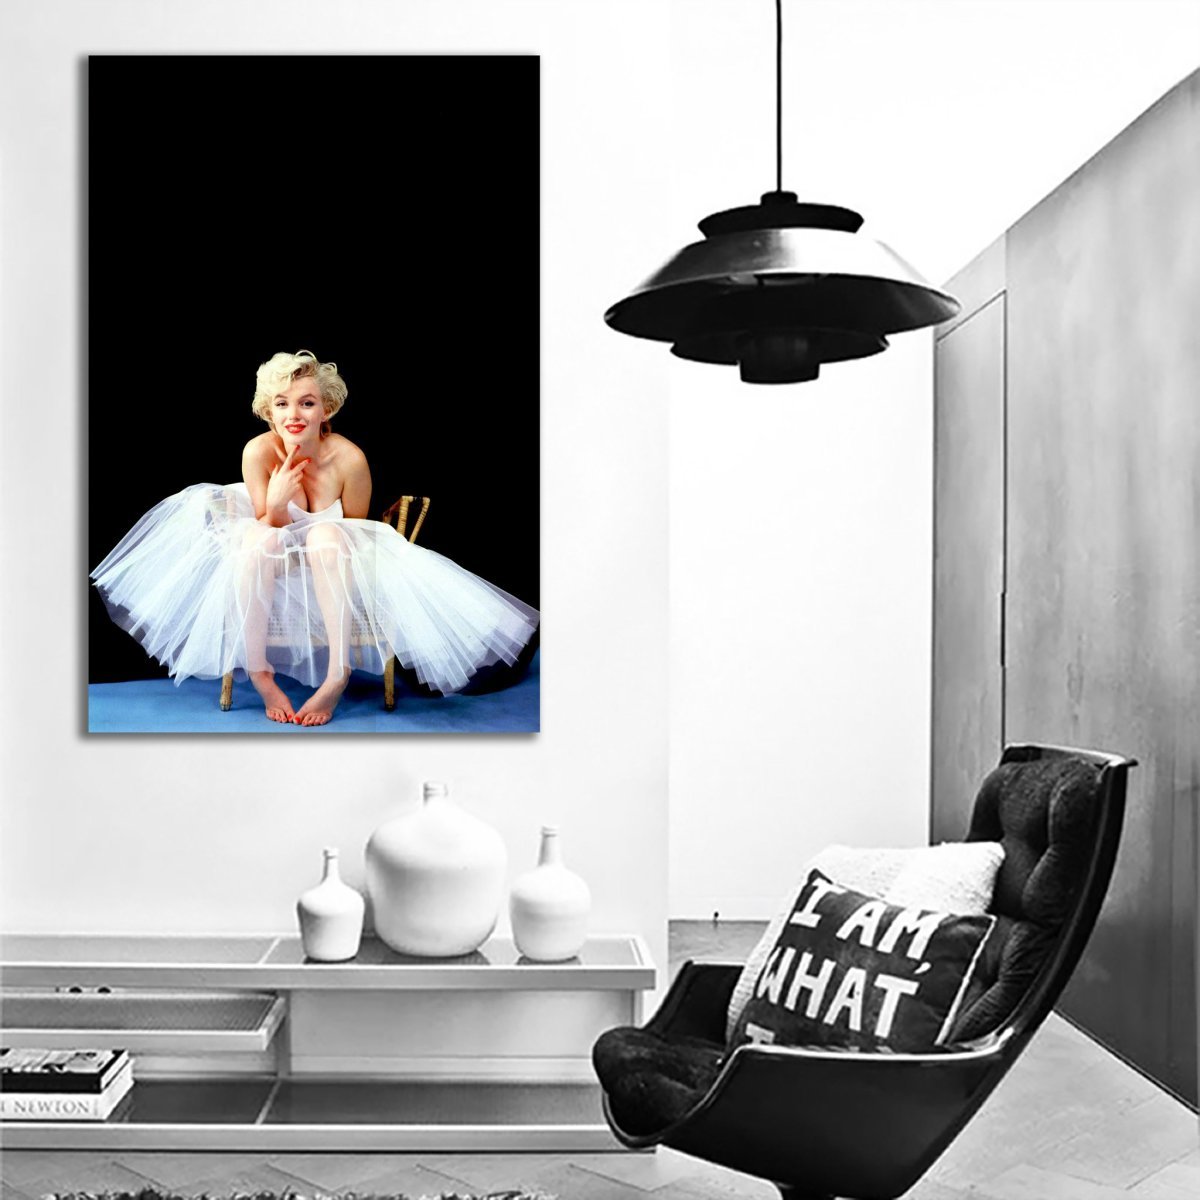 マリリン・モンロー 特大 ポスター 約150x100cm 海外 インテリア グッズ 絵 雑貨 写真 フォト アート 大判 大 Marilyn Monroe カフェ 26